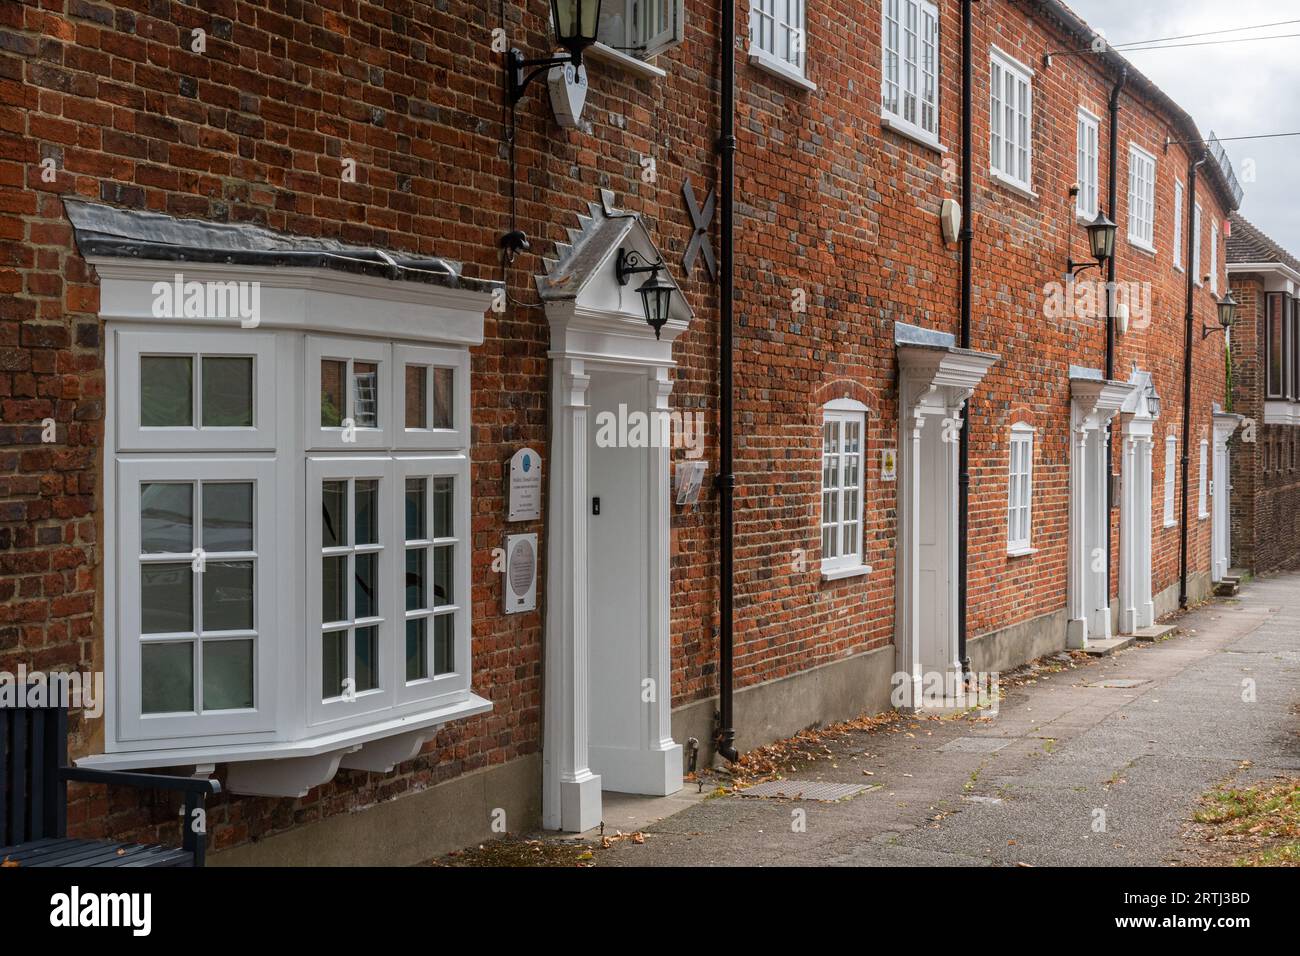 Terrazza di case o proprietà in stile georgiano a Farnham, Surrey, Inghilterra, Regno Unito. Tema: Immobili, abitazioni, immobili Foto Stock